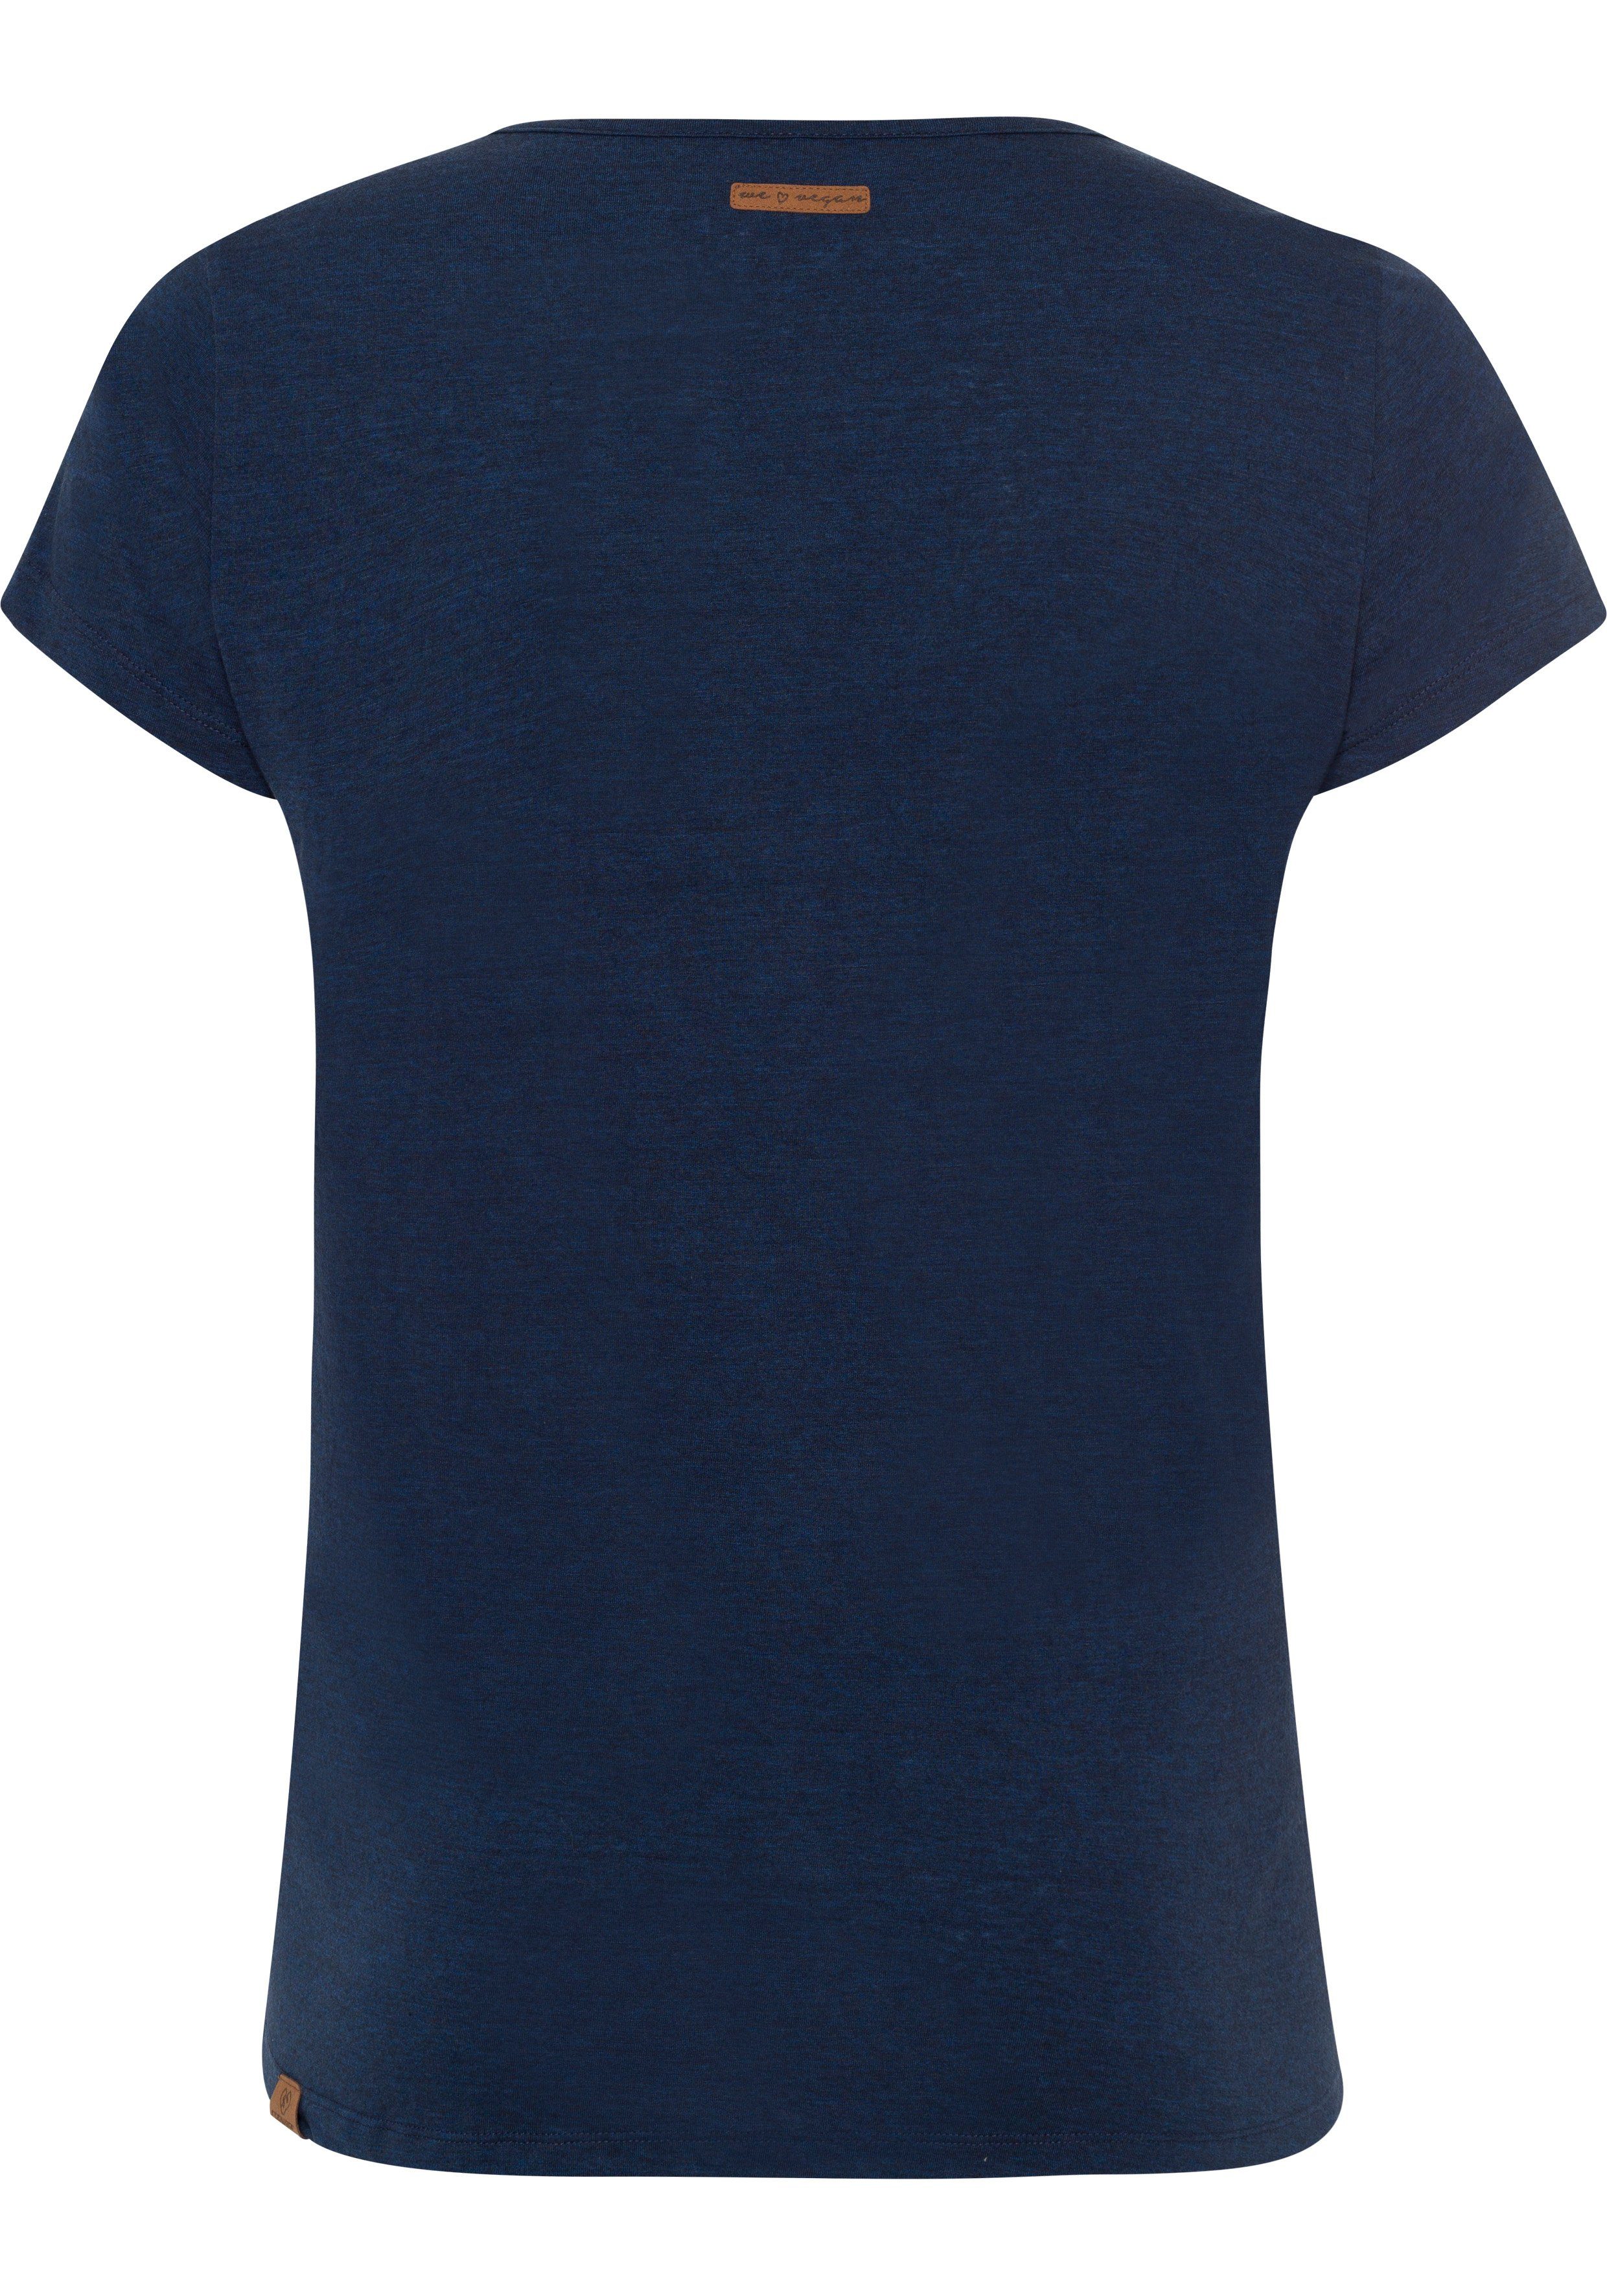 Ragwear Plus T-Shirt MINT A 2028 in Holzoptik natürlicher Logoschriftzug Zierknopf-Applikation PLUS navy und mit